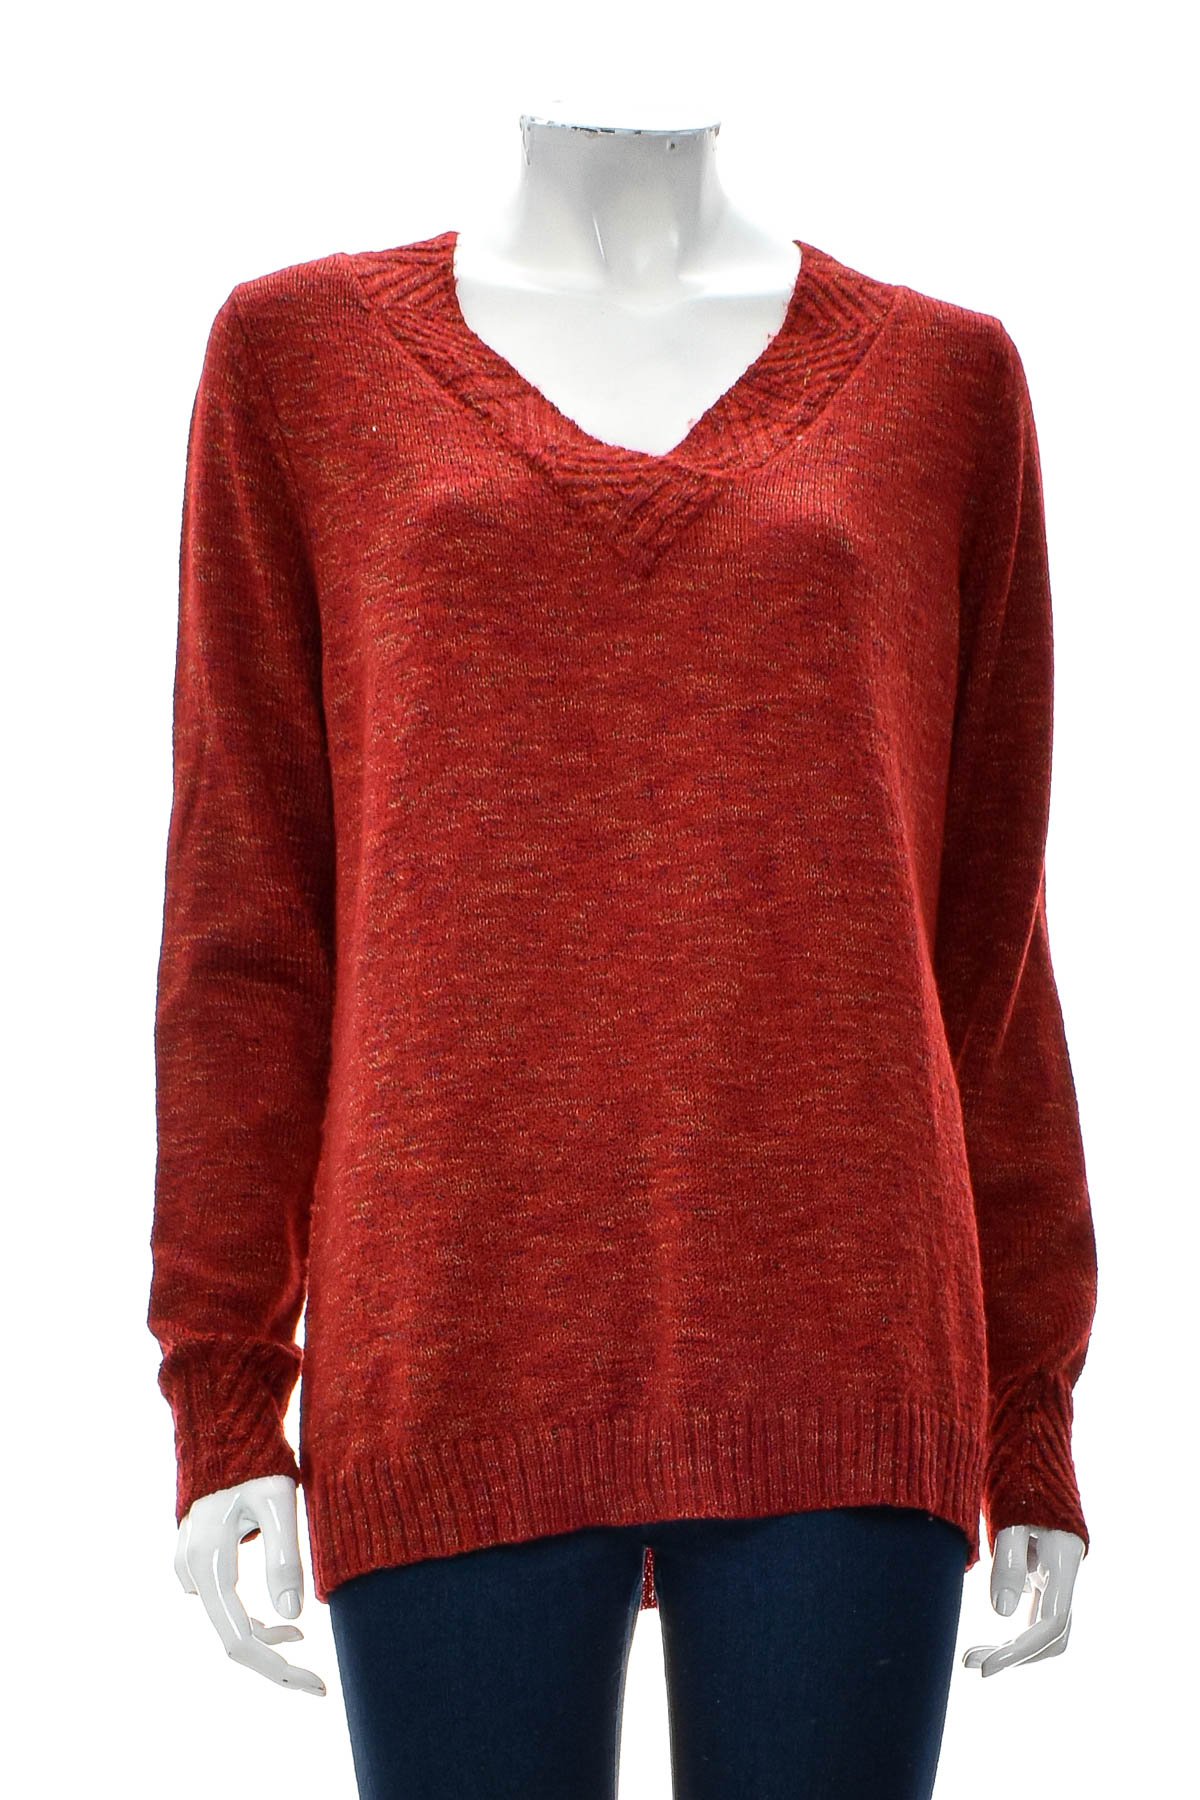 Women's sweater - Laura Scott - 0